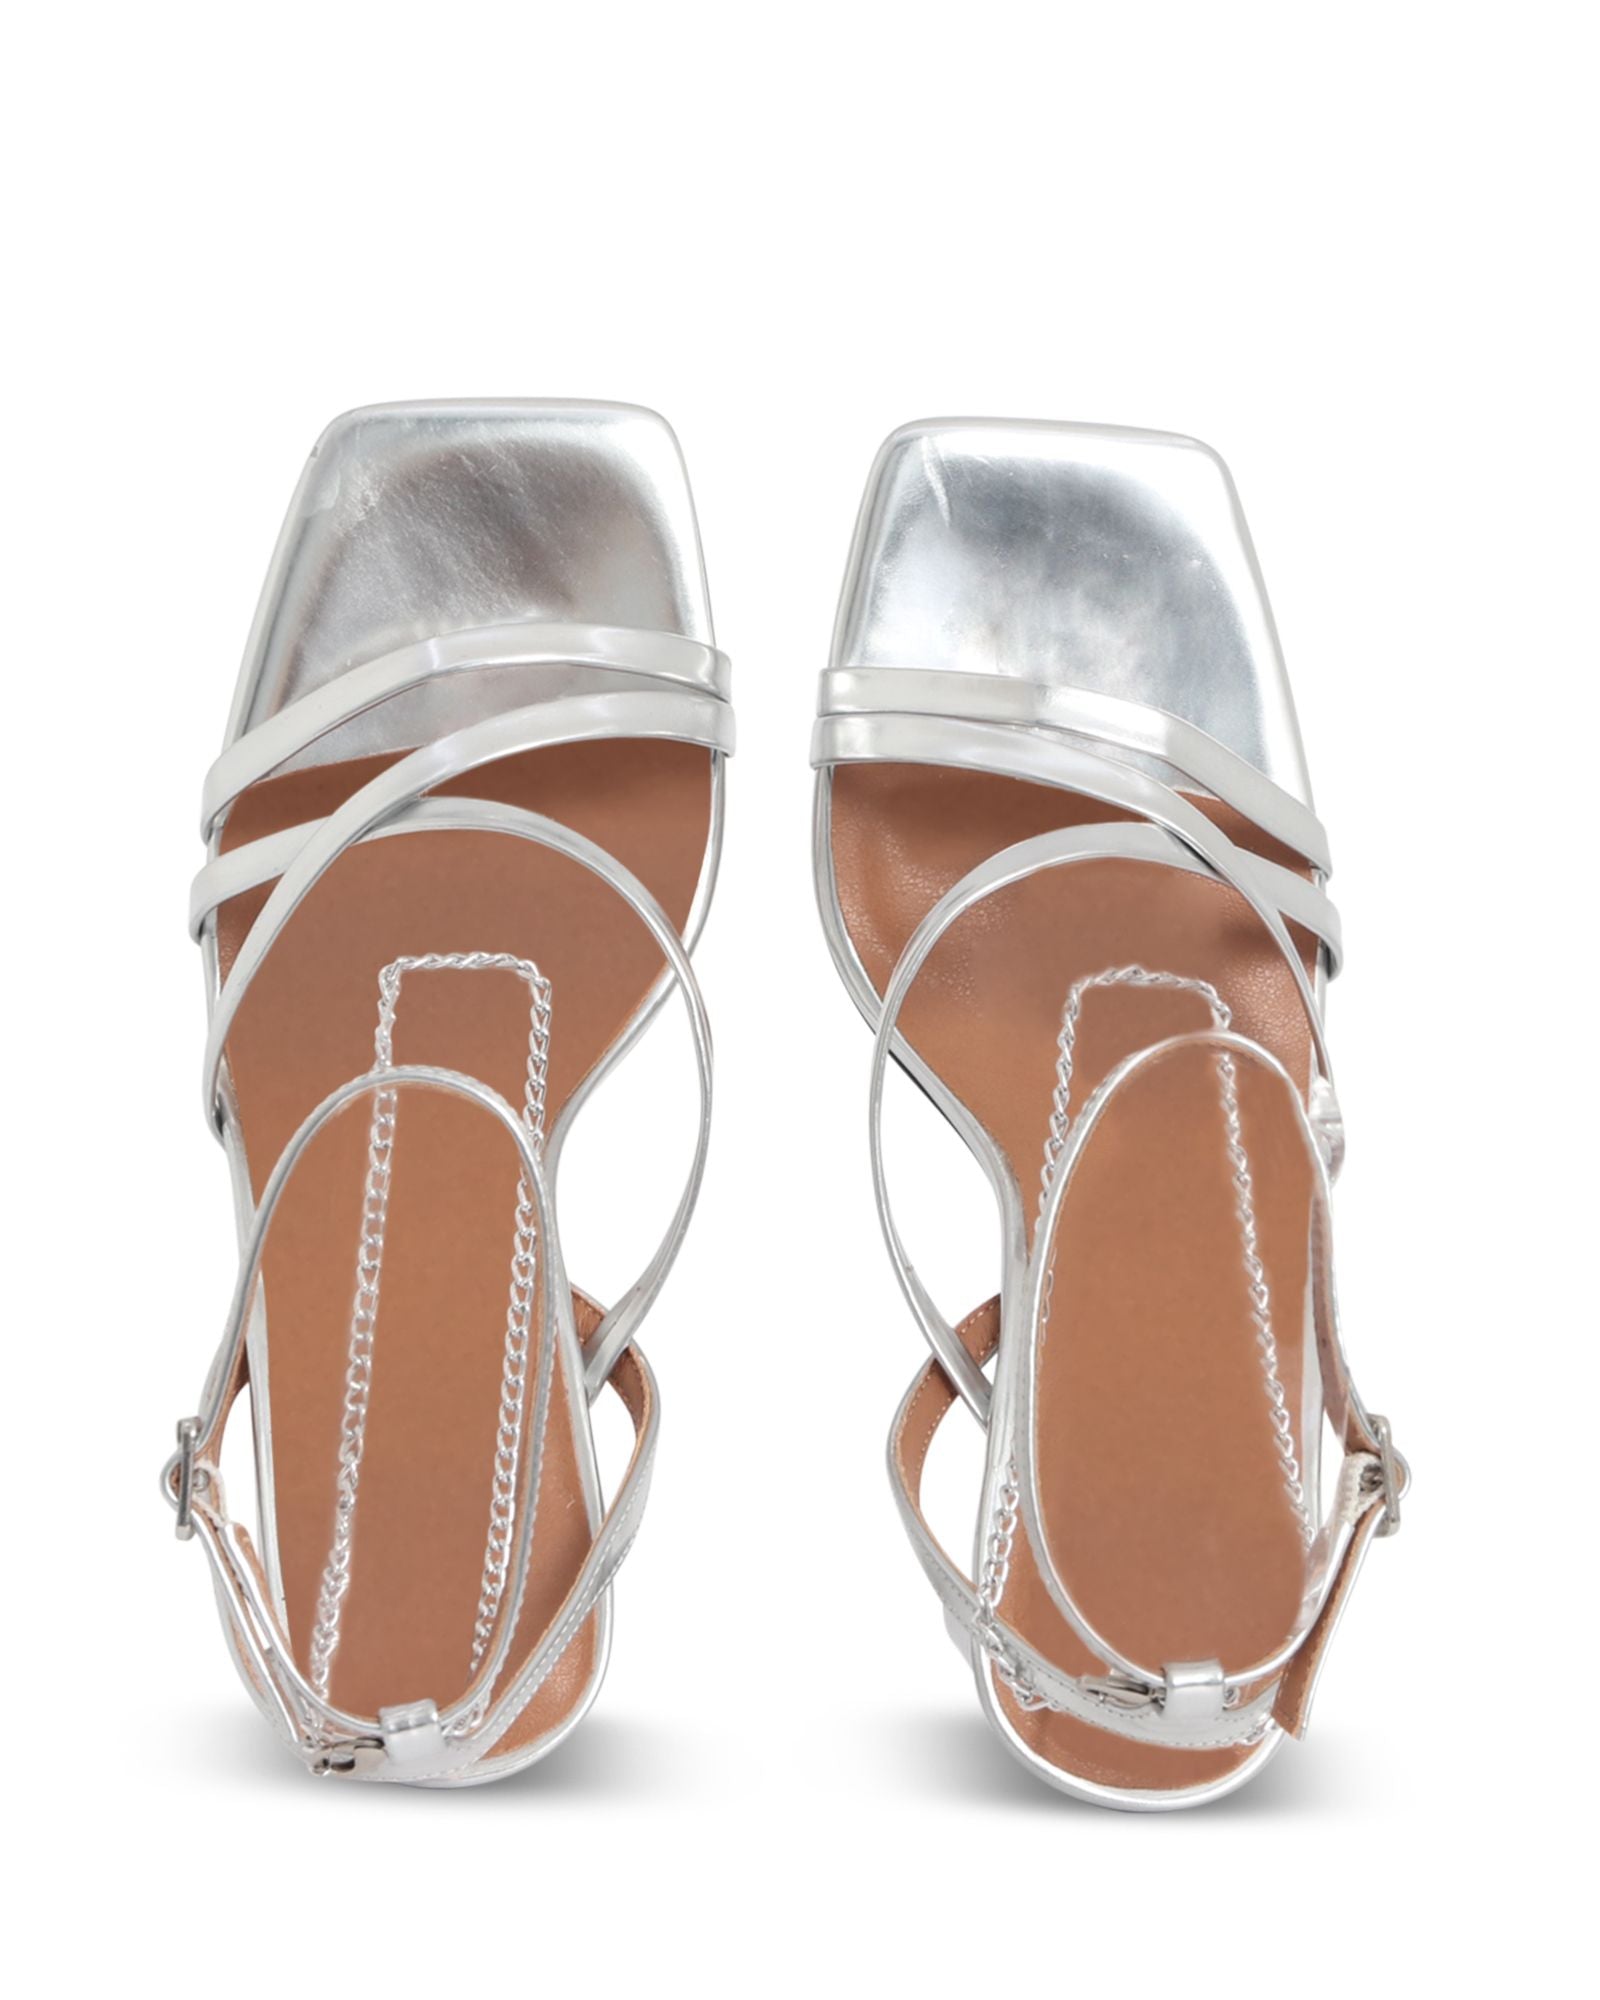 BELIZE STRAPPY HEEL - SKIN FOOTWEAR - 36, 37, 38, 39, 40, 41, BF, BLACK, SILVER, STRAPPY HEEL, womens footwear - Stomp Shoes Darwin